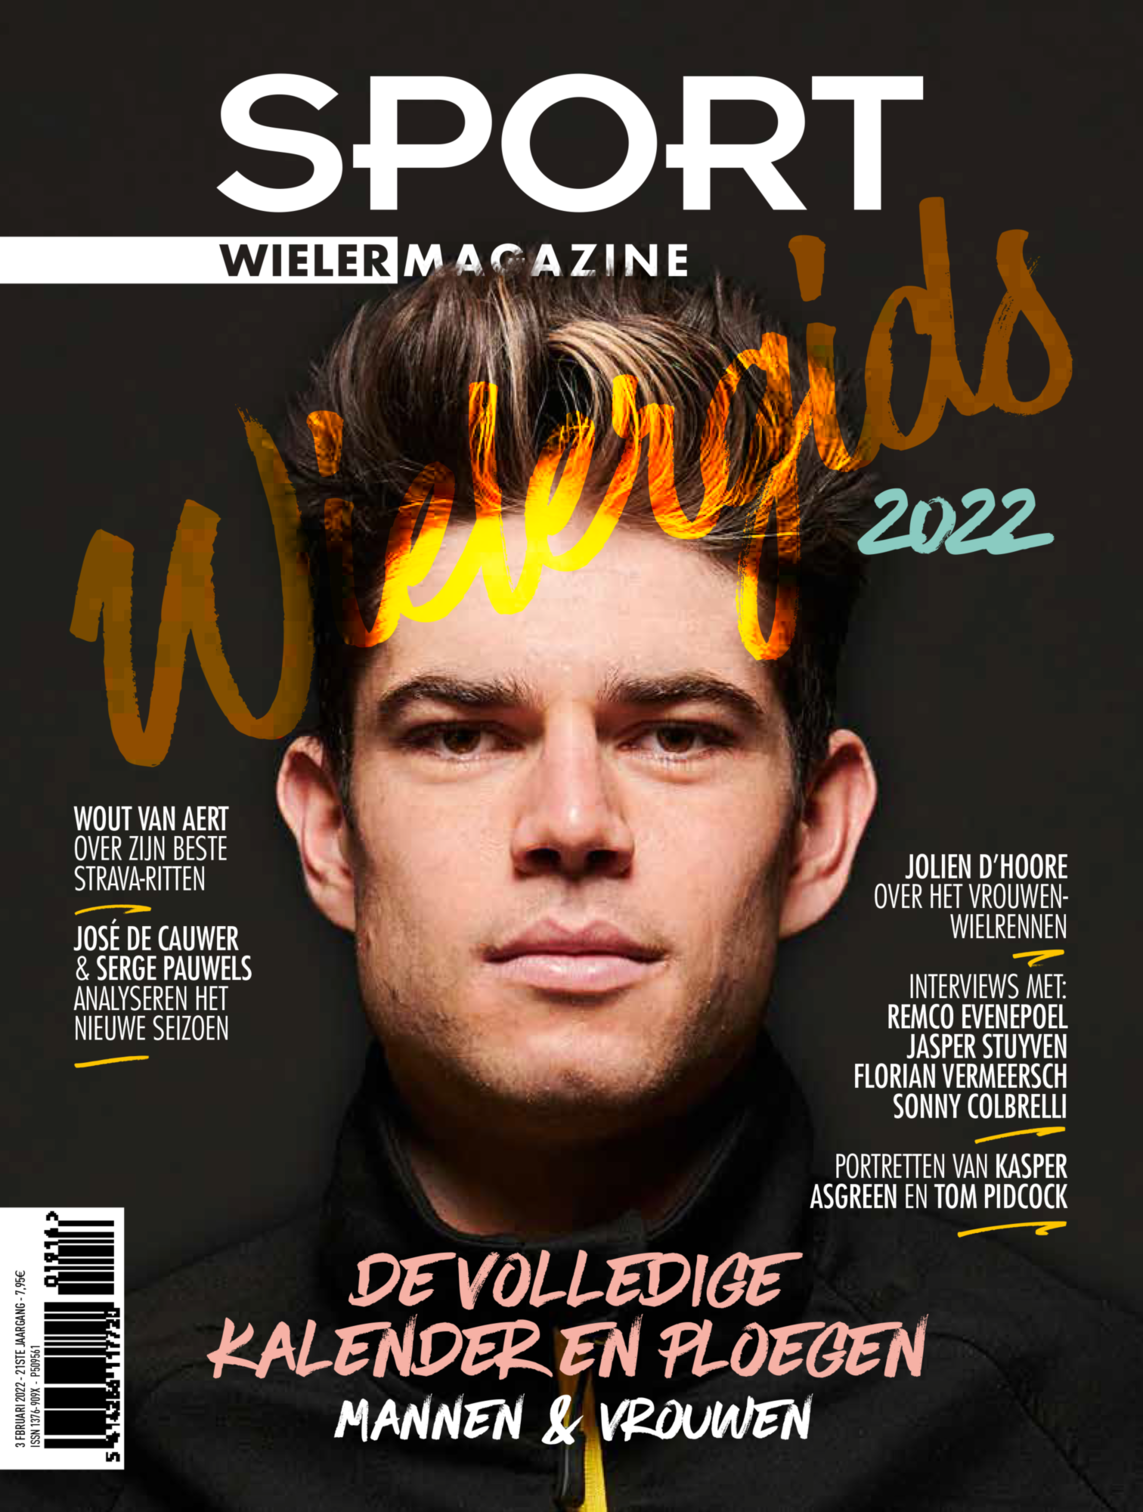 Sport/Wielermagazine